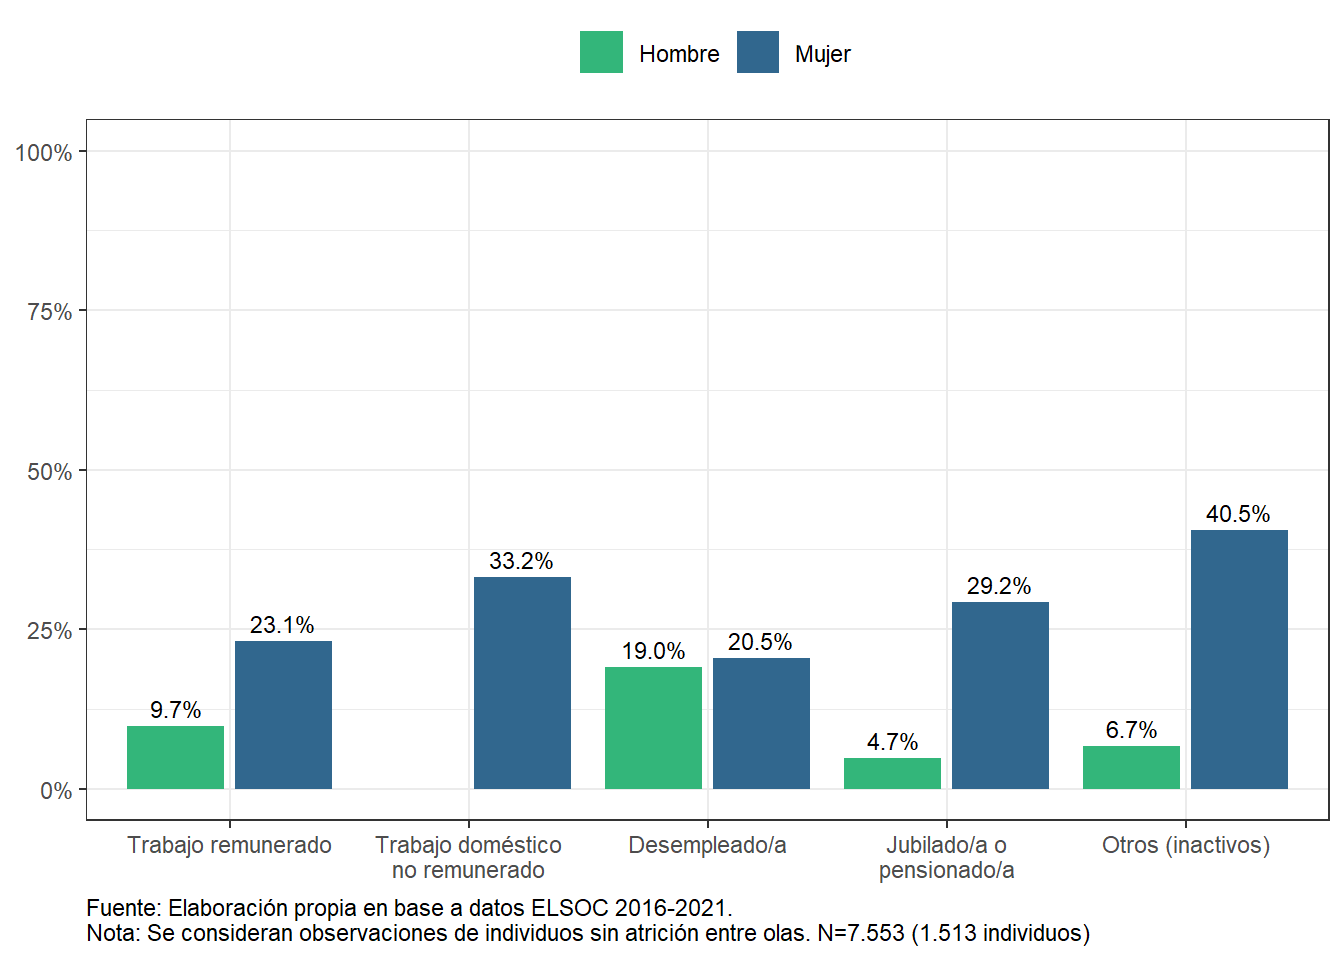 Porcentaje que presenta síntomas de depresión moderados a severos, según situación laboral y sexo (2021)